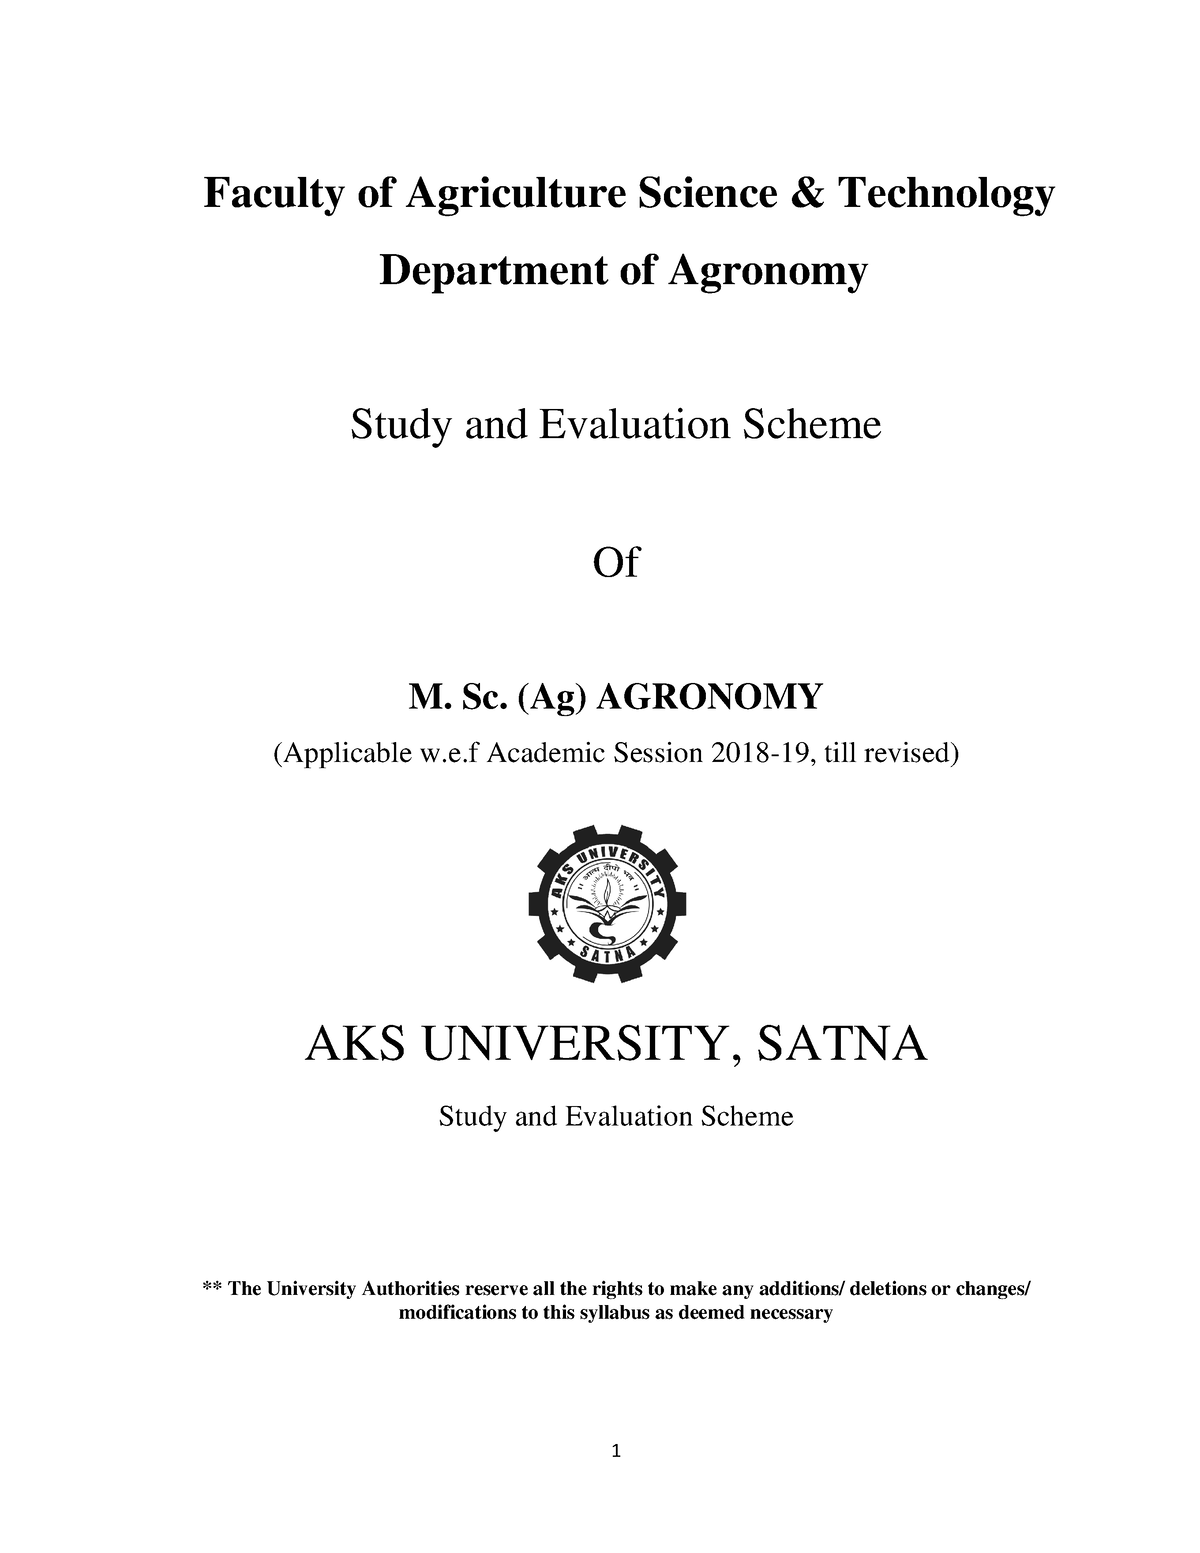 m.sc agronomy thesis topics